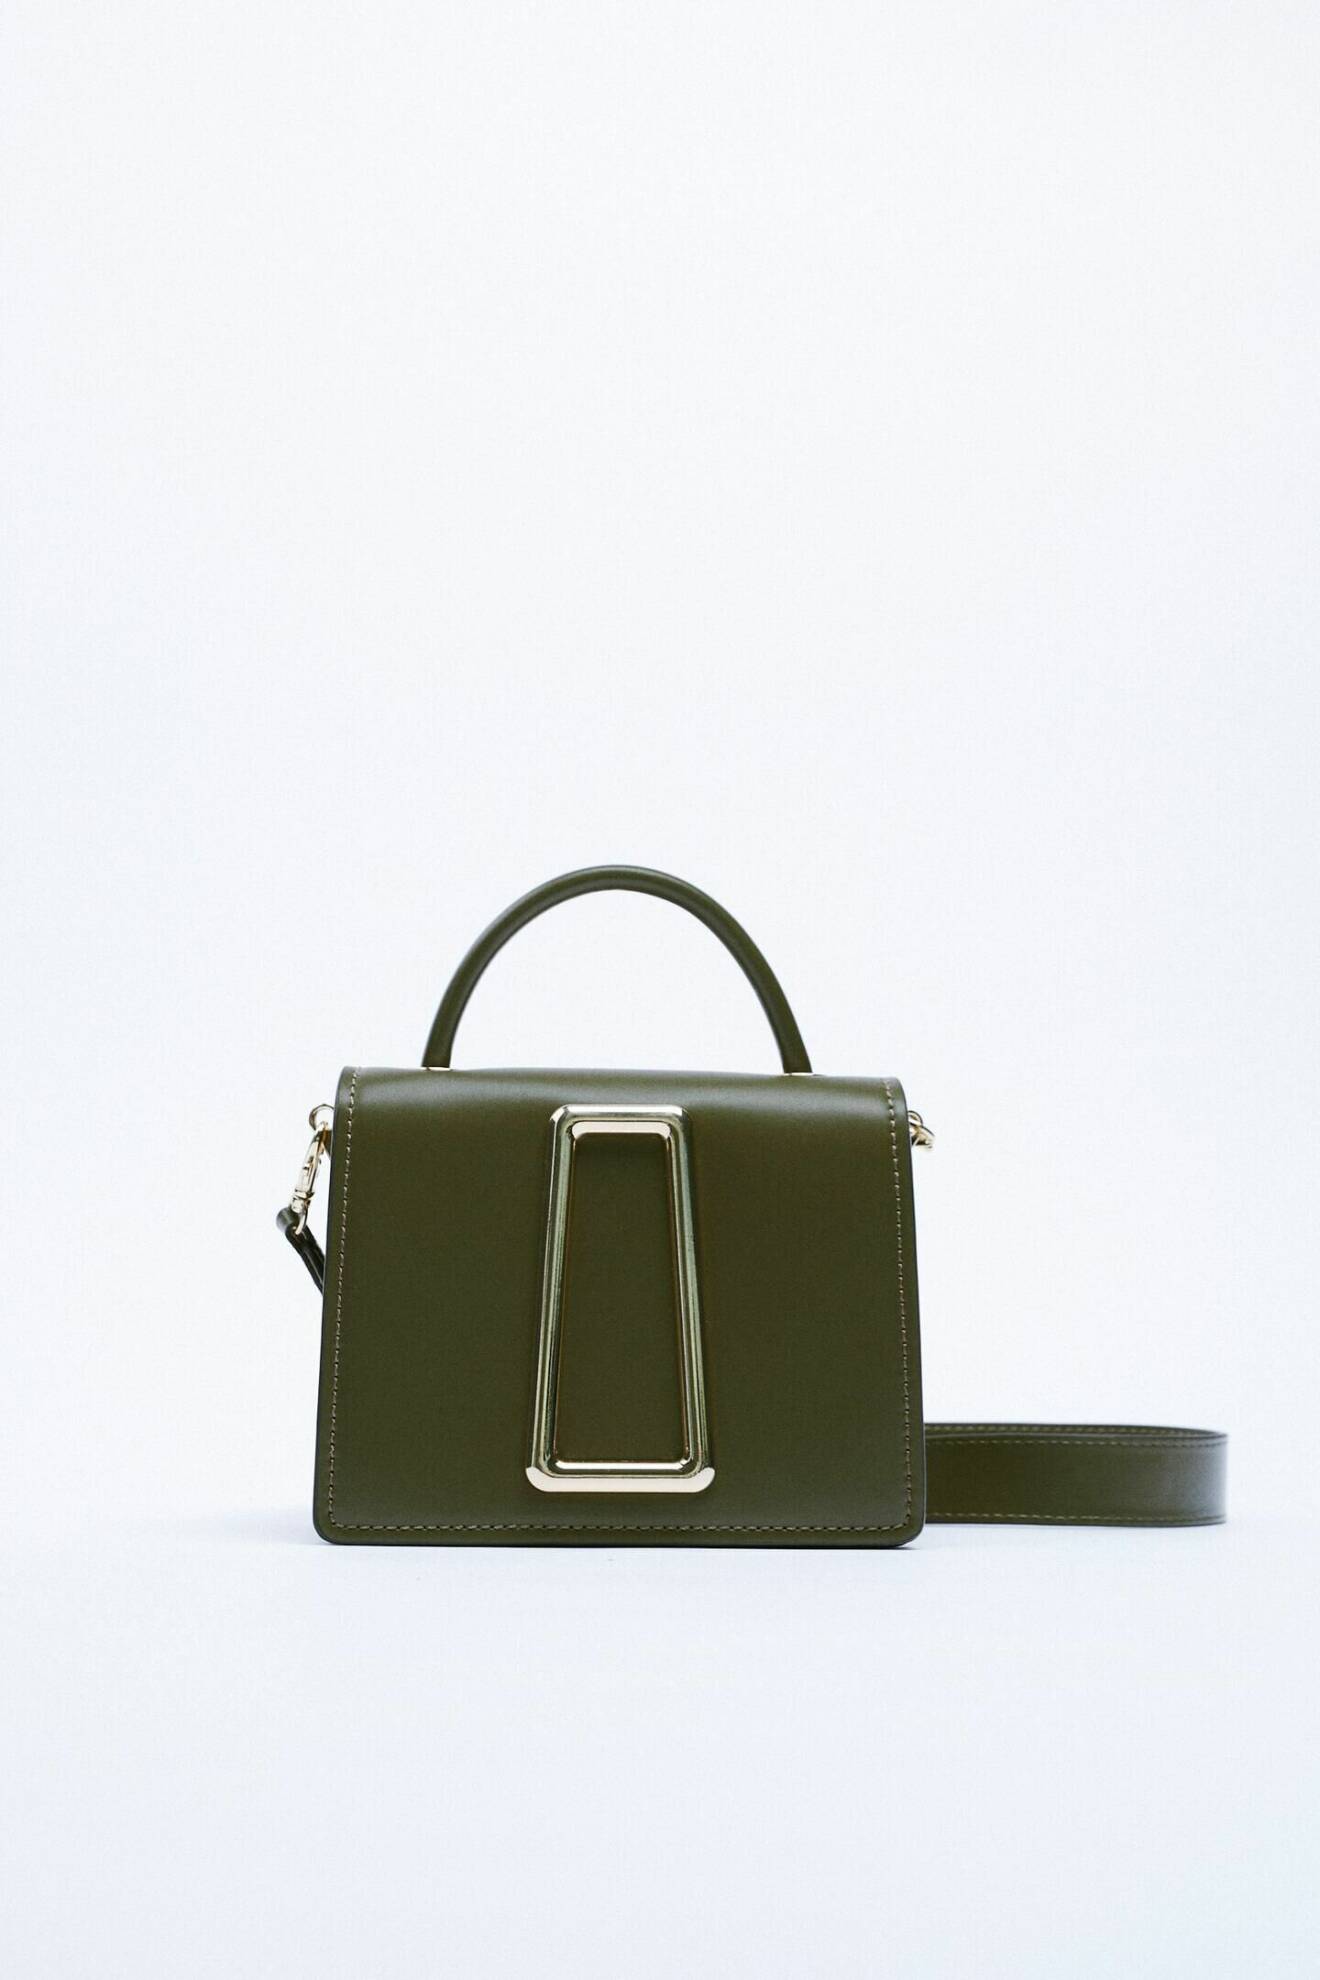 Skogsgrön väska i mindre modell med guldfärgat spänne på. Både litet handtag och lång axelrem. Väska från Zara.